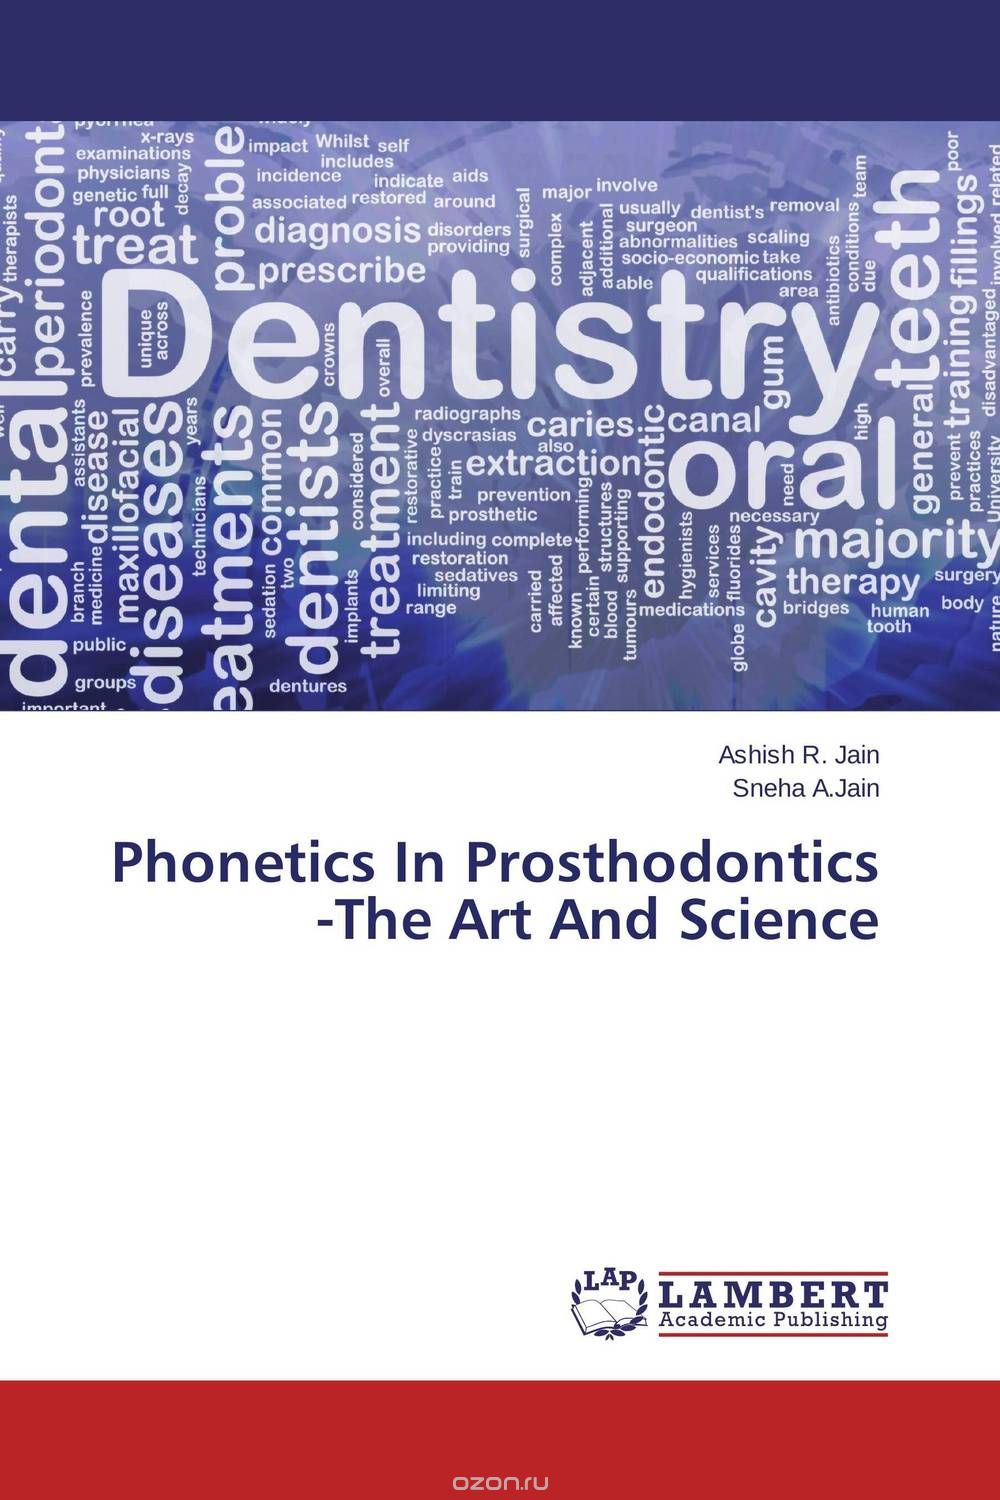 Скачать книгу "Phonetics In Prosthodontics -The Art And Science"